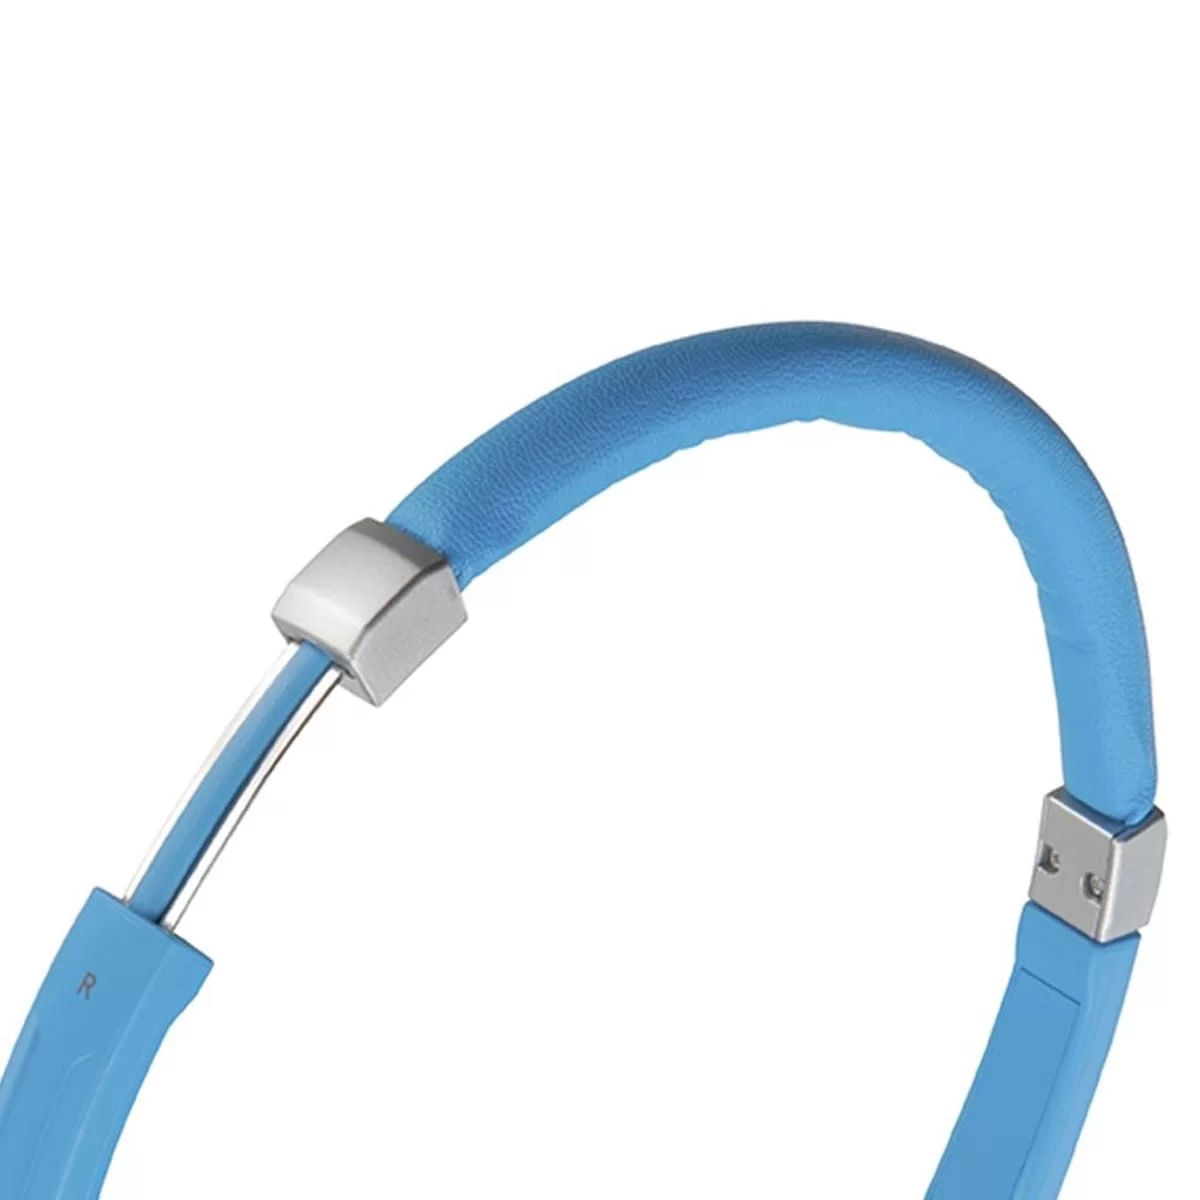 Audífono Motorola Pulse 2 de Diadema con Cable y Micrófono incorporado - Color Azul